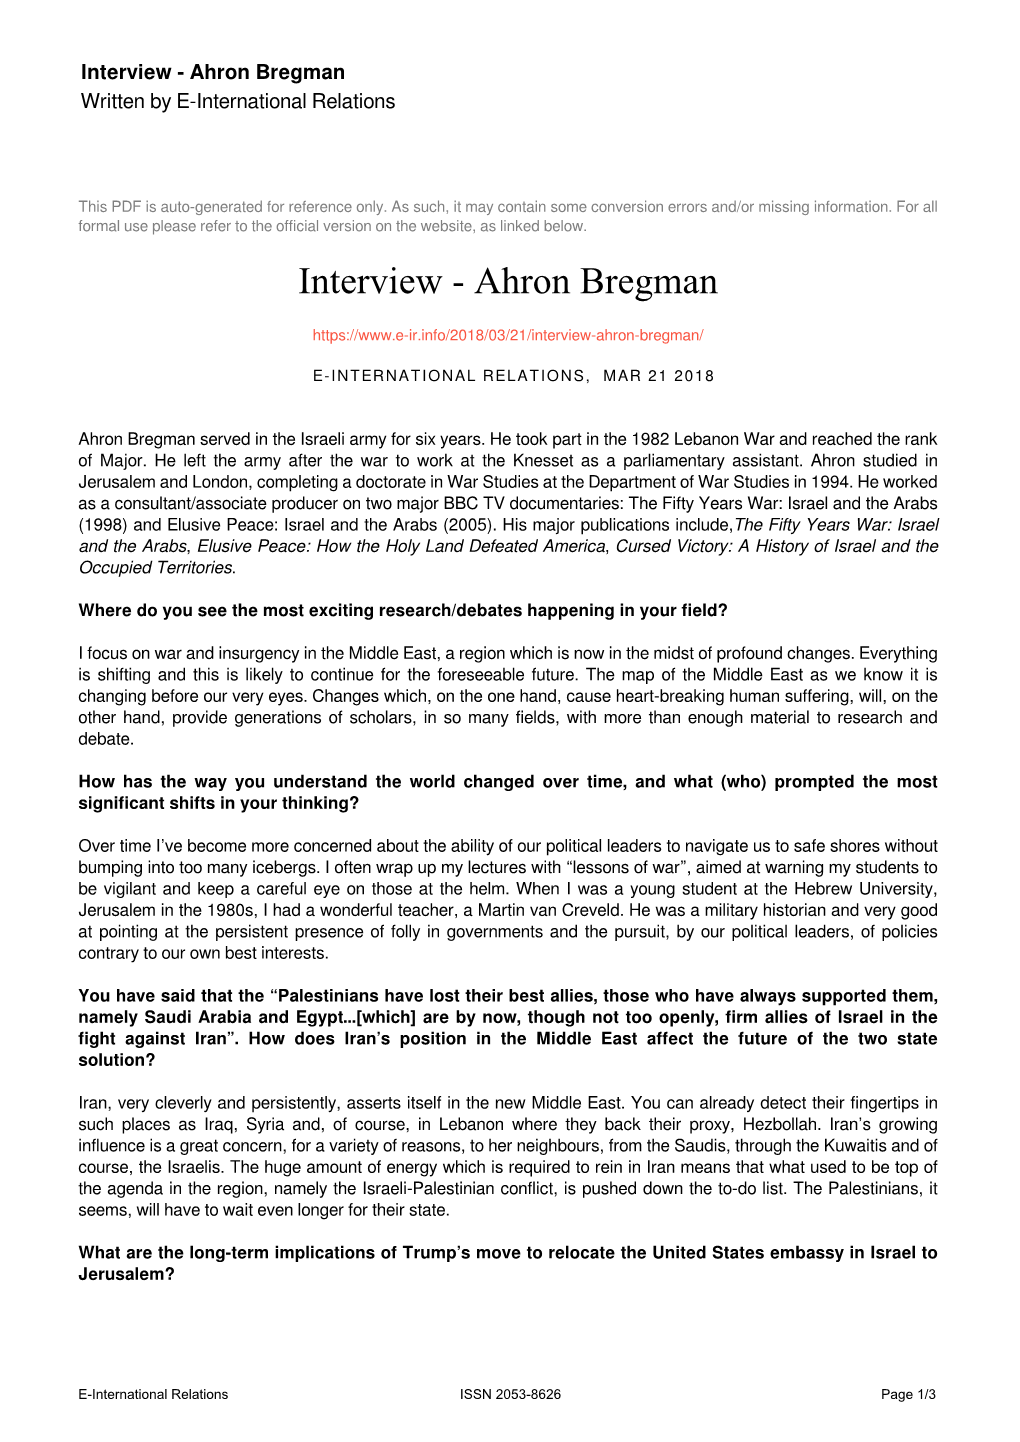 Ahron Bregman Written by E-International Relations